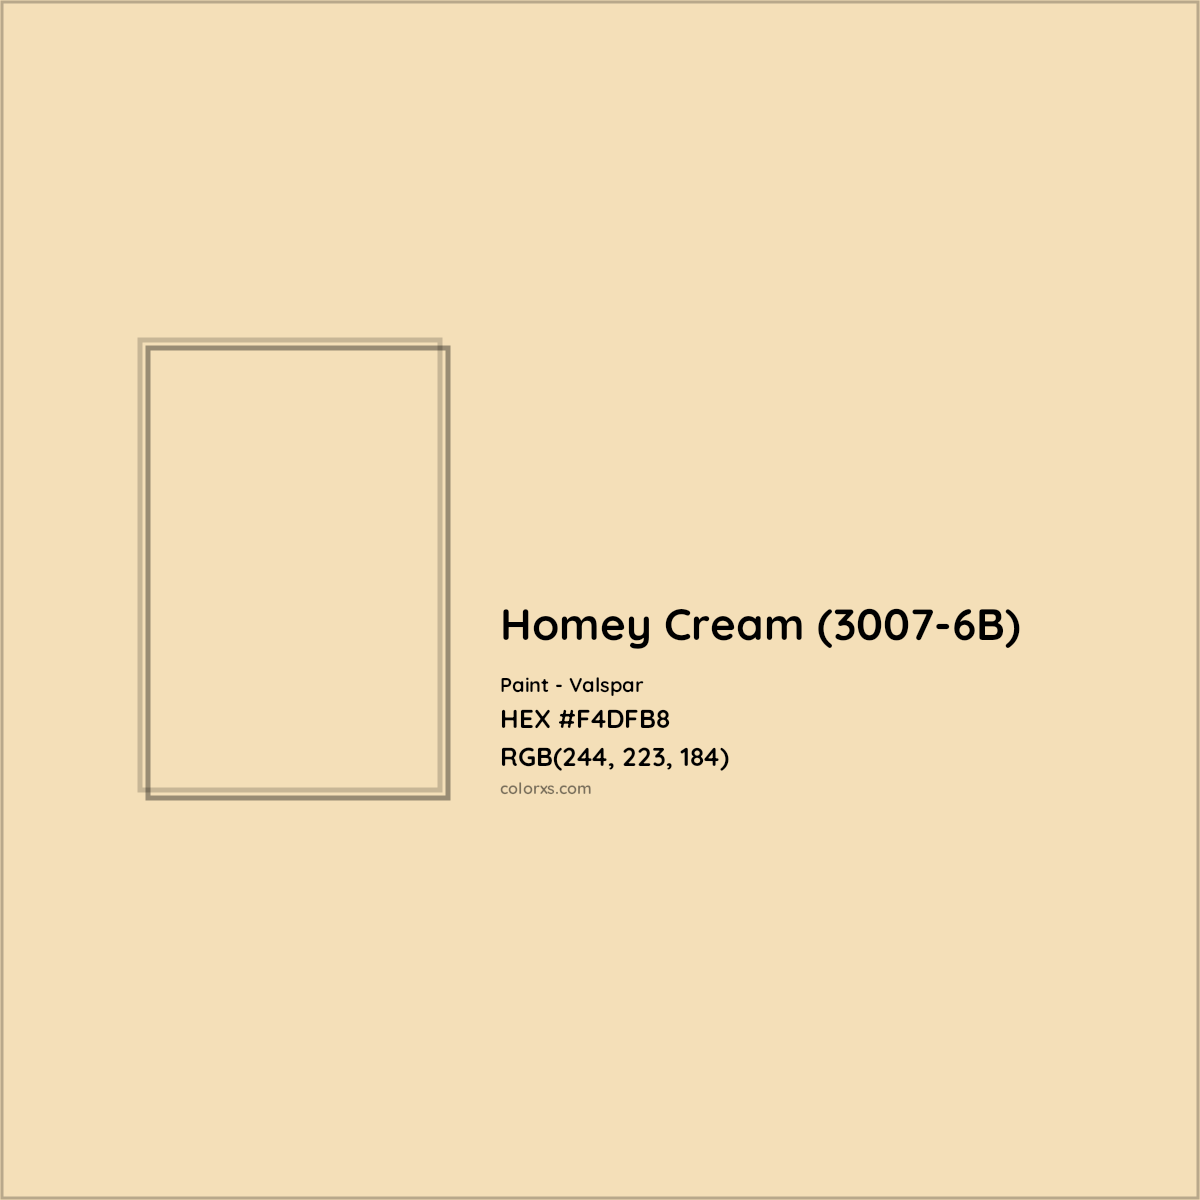 HEX #F4DFB8 Homey Cream (3007-6B) Paint Valspar - Color Code